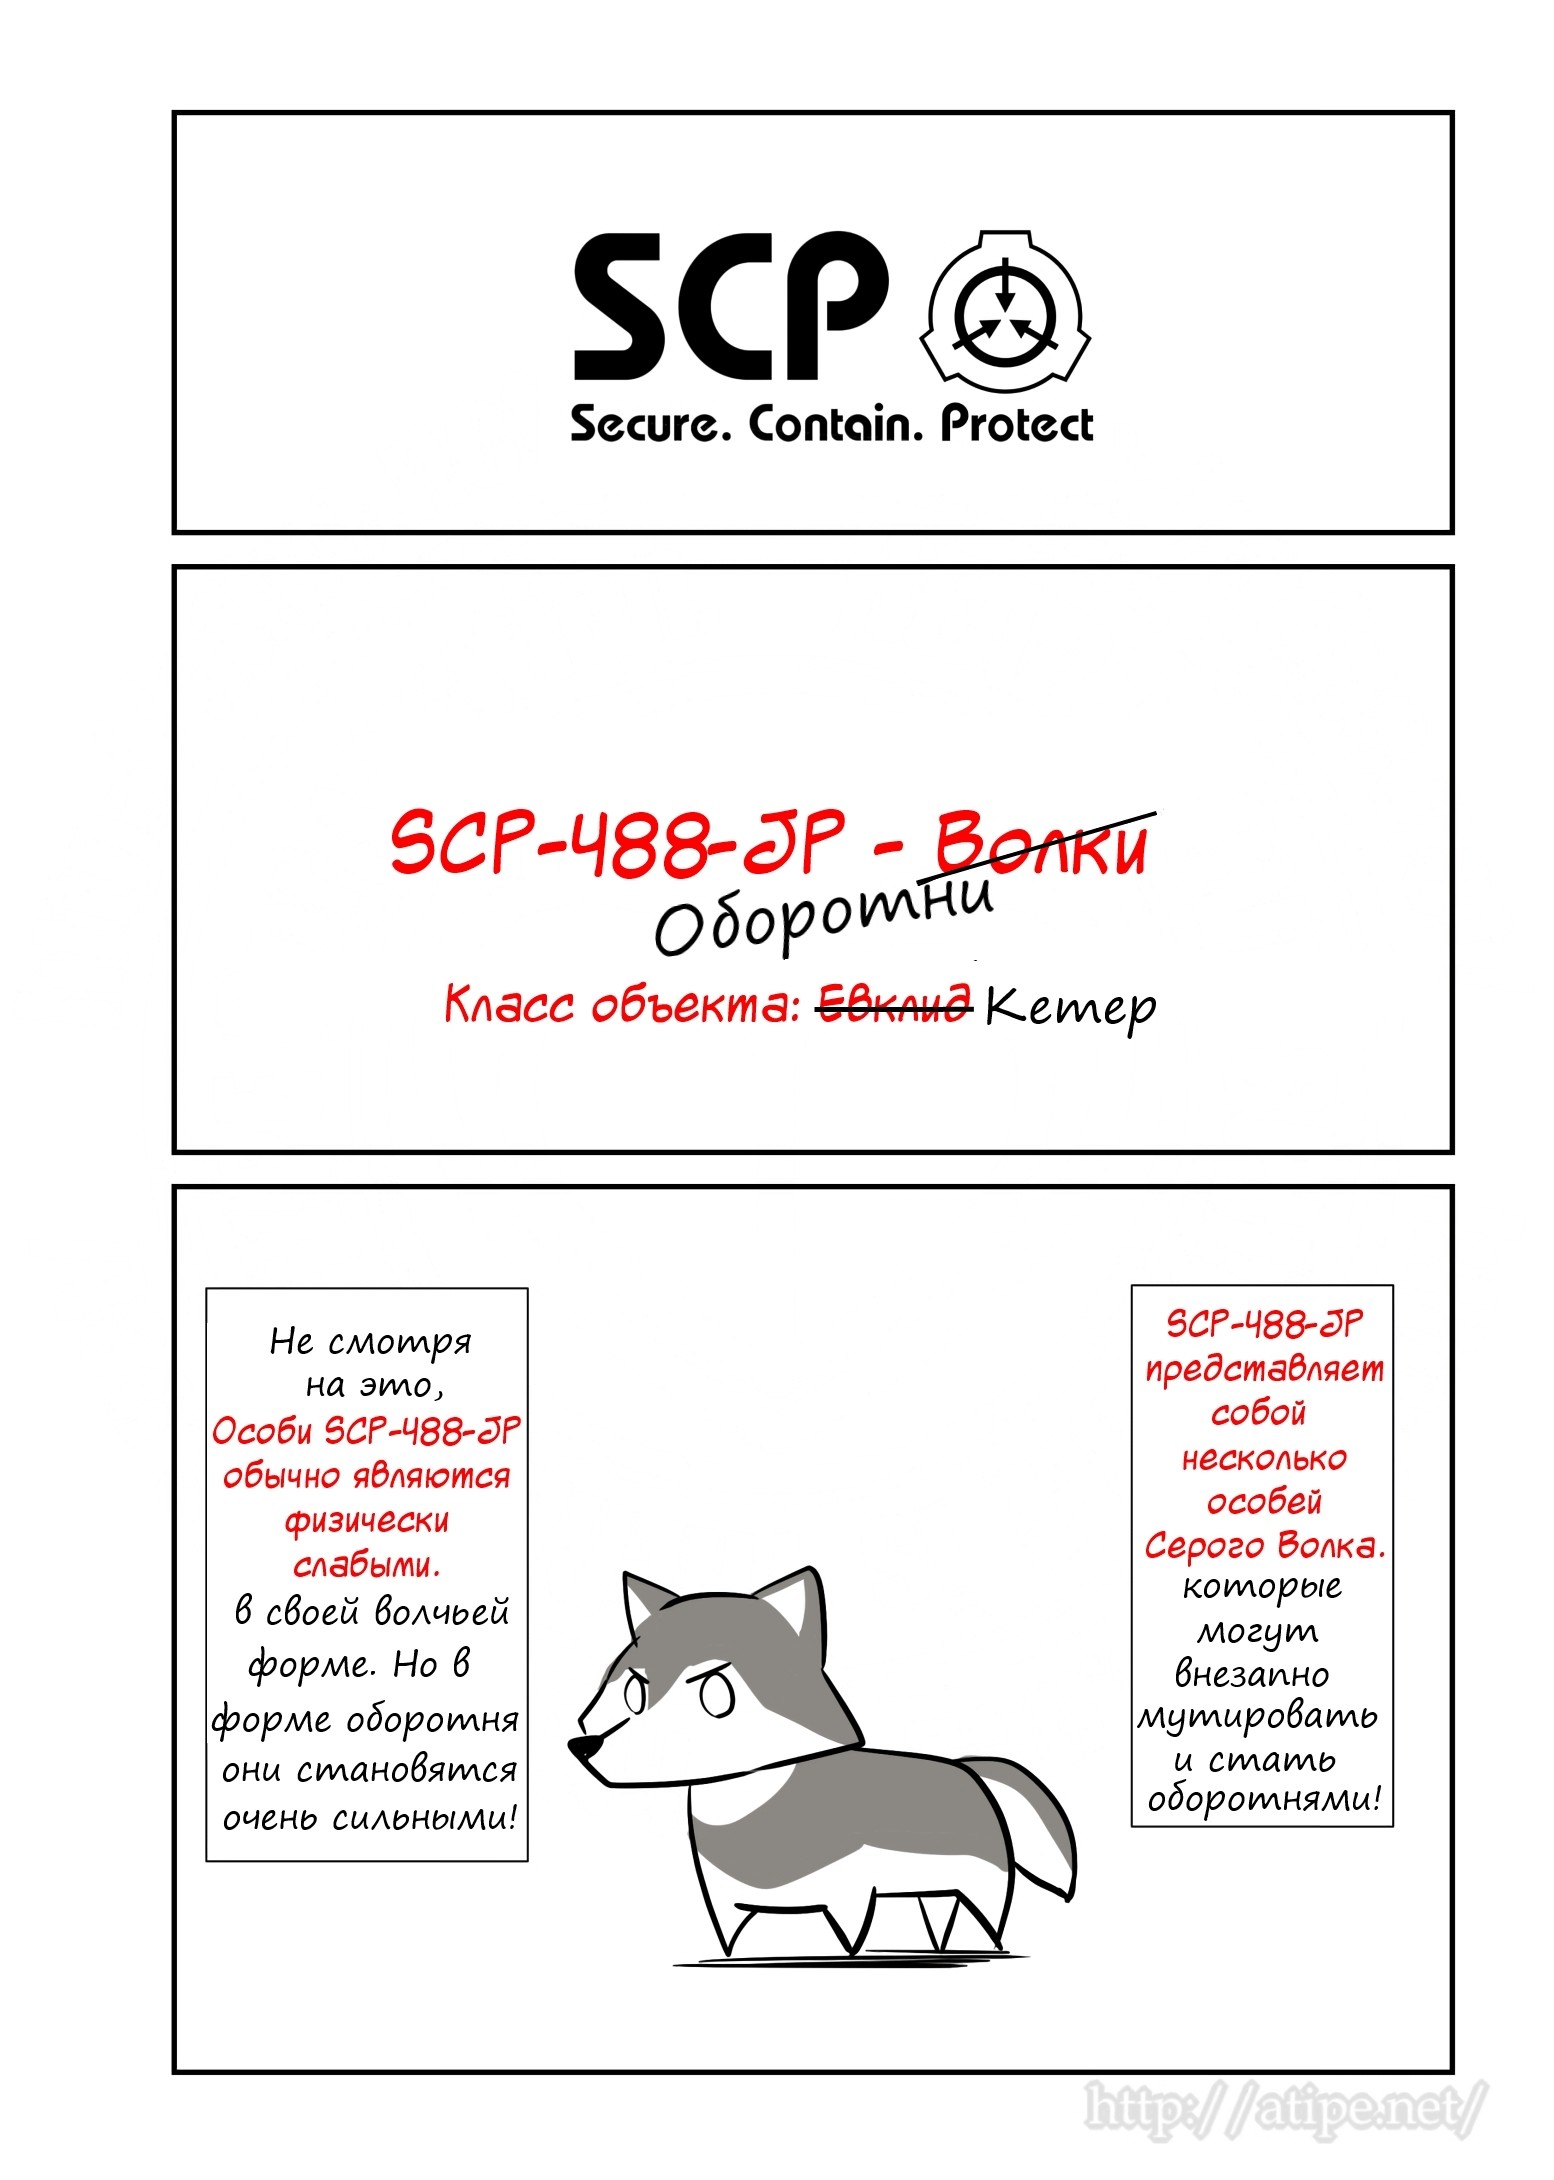 Упрощенный SCP 1 - 55 SCP-488-JP